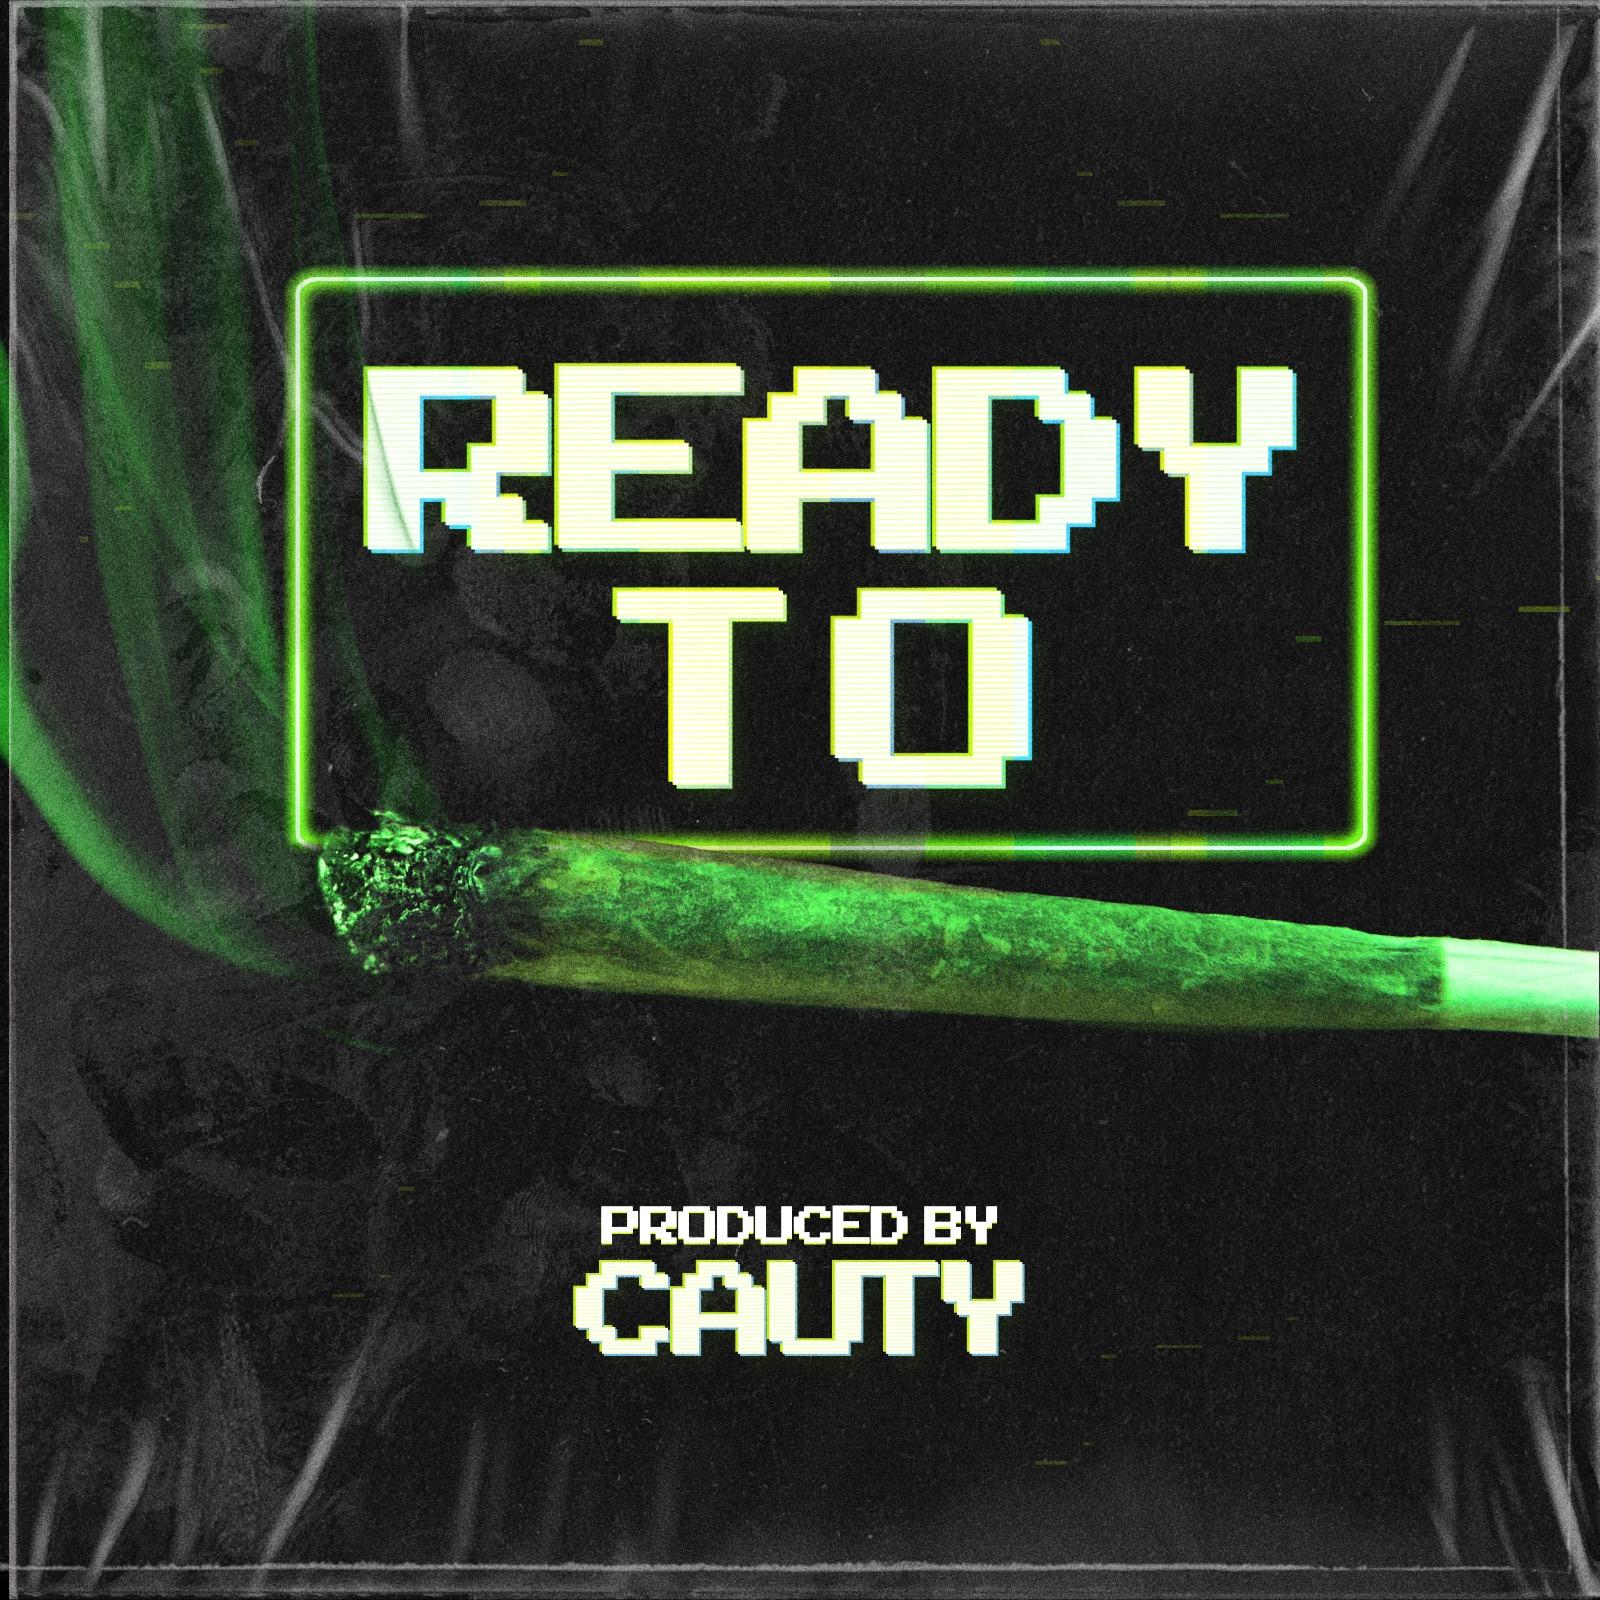 Cauty lanza dos emocionantes álbumes de producción propia “Listo para” y “Listo para”